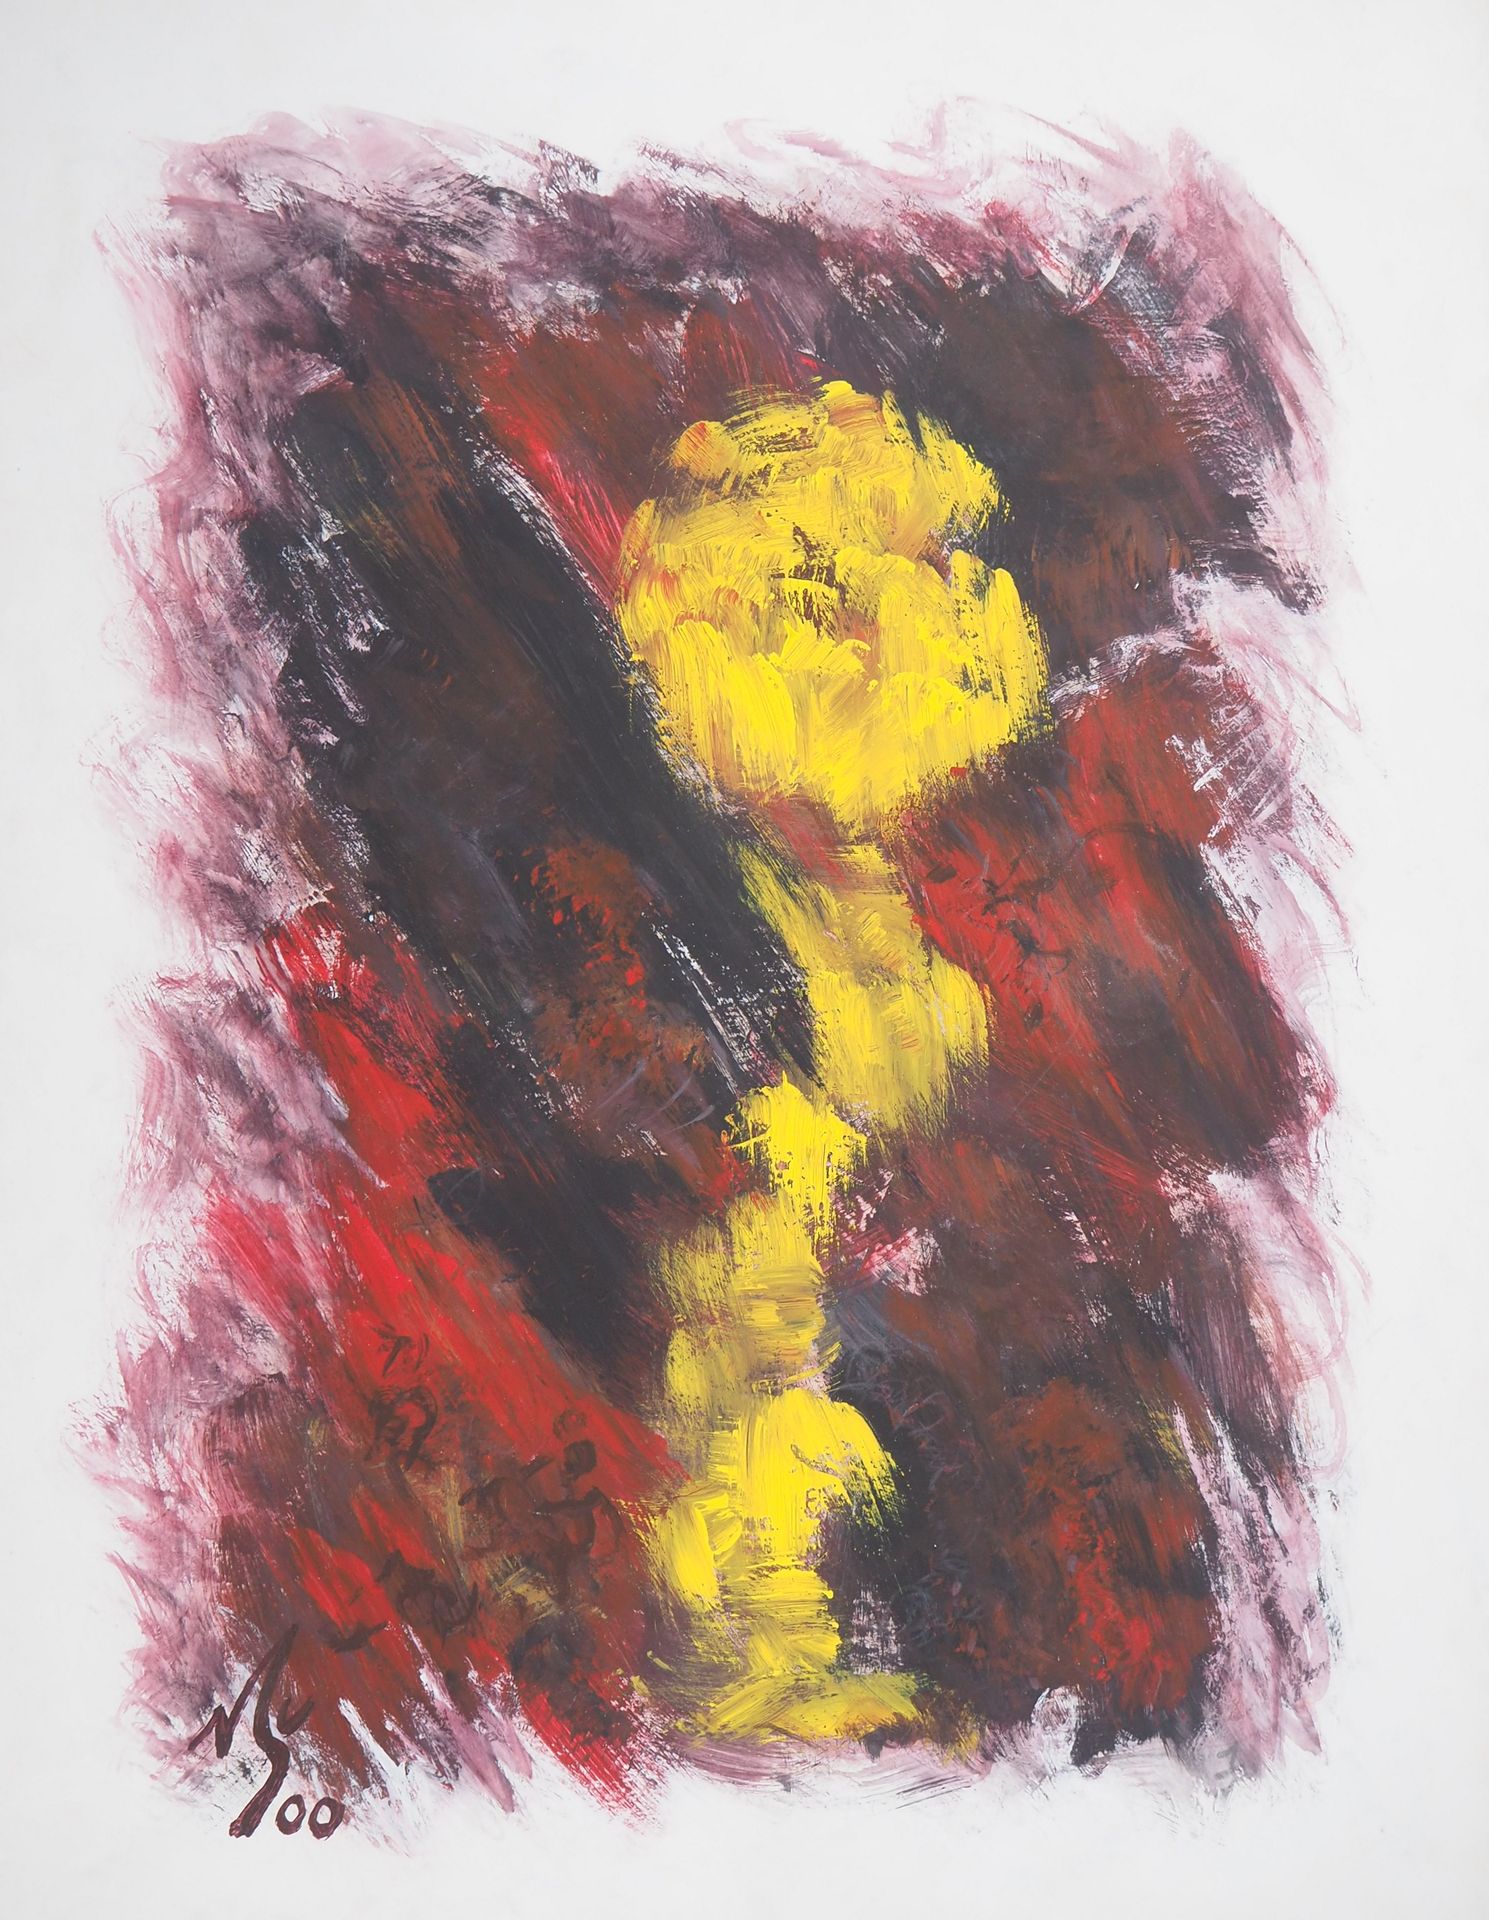 Michel GUIGNARD Michel Guignard

Fiore giallo in un paesaggio fulvo, 2000

Acril&hellip;